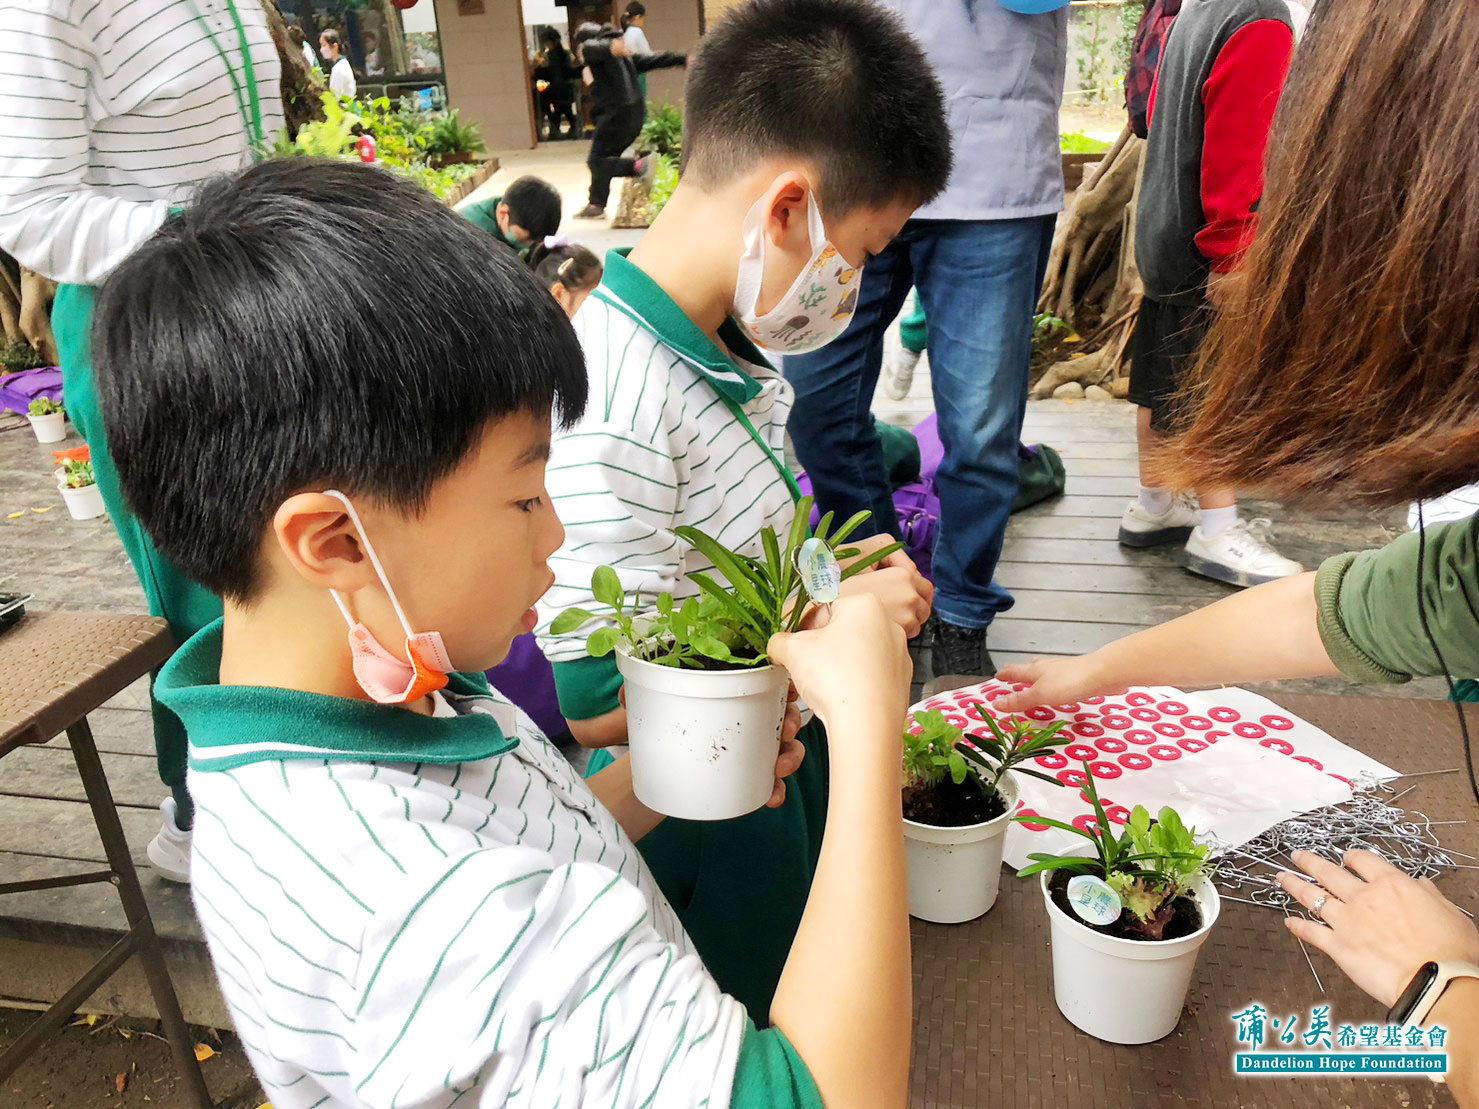 學童們製作小農星球，其上三株植物代表蒲公英基金會三生有幸的概念。